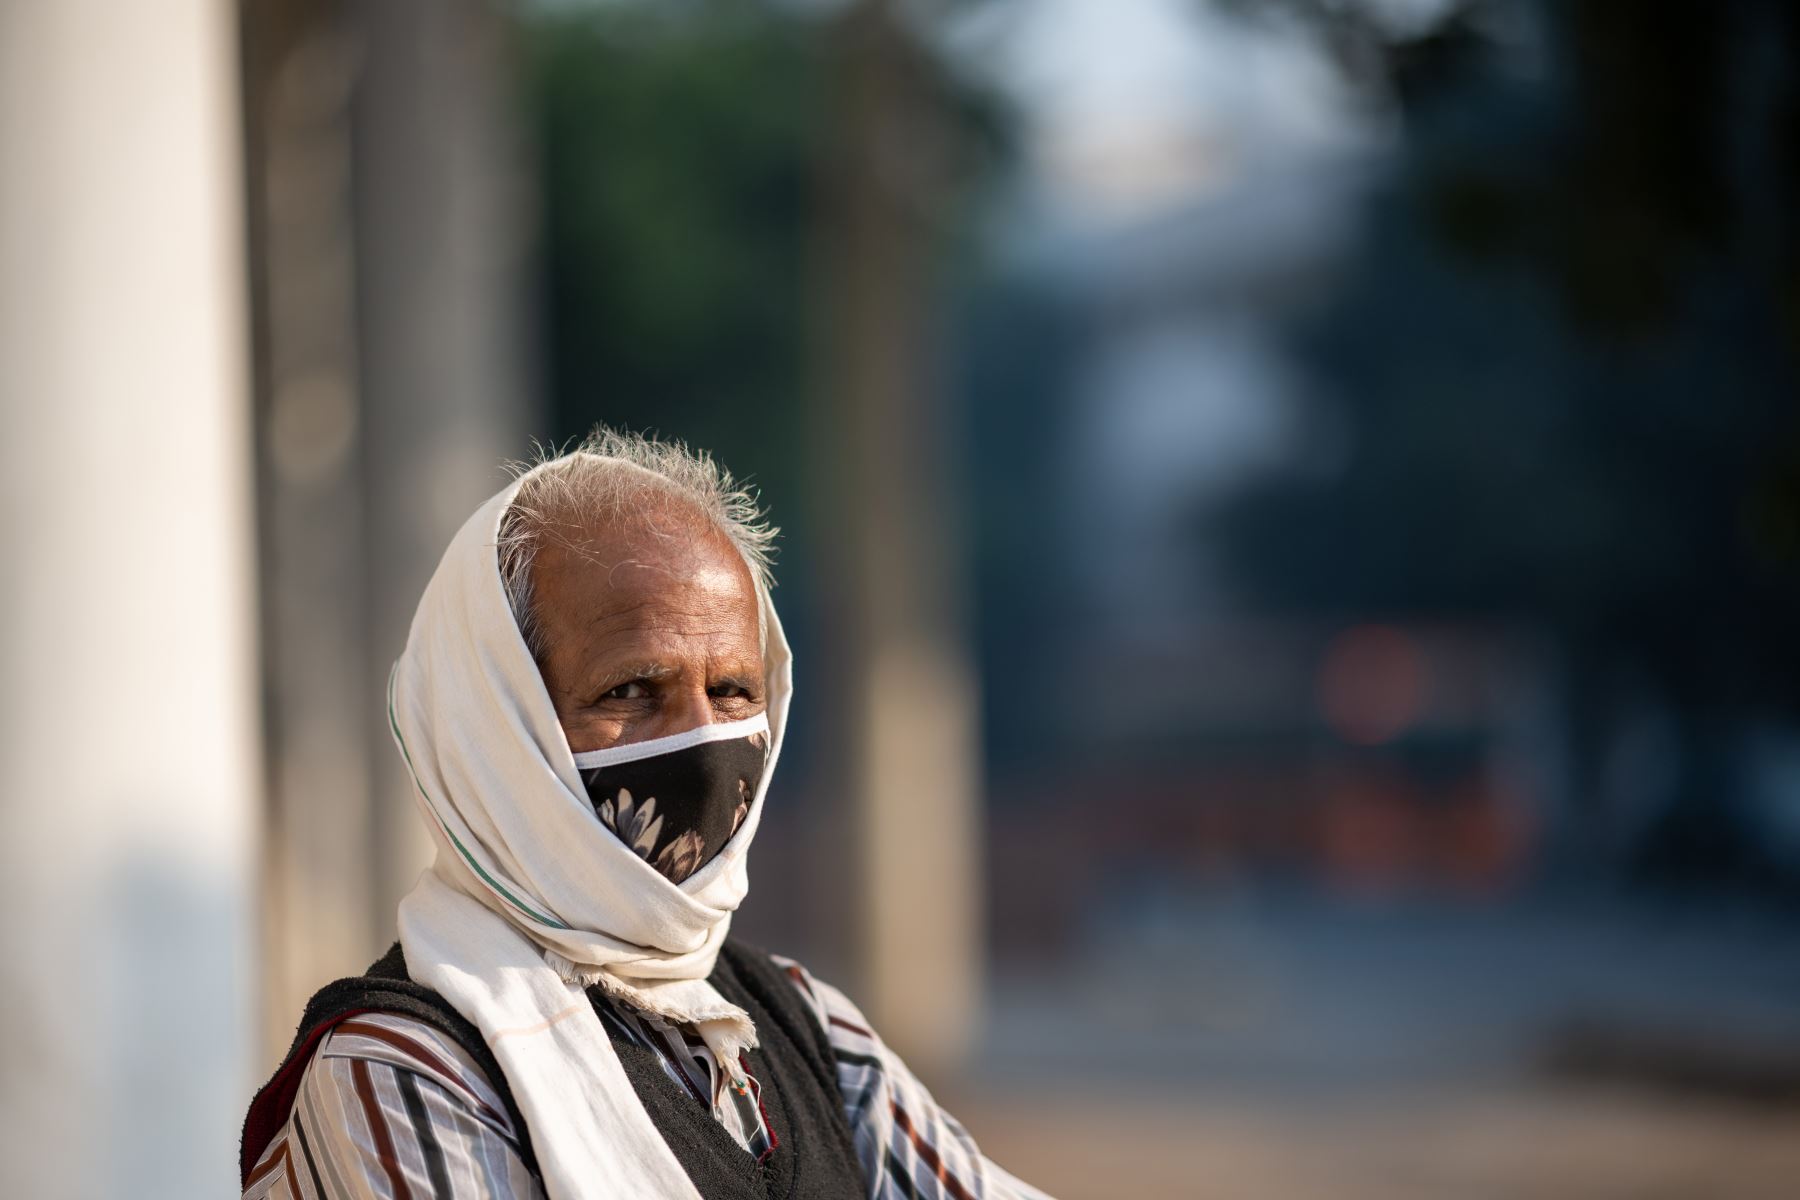 Un hombre que usa una mascarilla como medida preventiva contra el coronavirus  espera para cruzar una calle en Nueva Delhi .Los casos de coronavirus en India superaron los nueve millones.
Foto: AFP